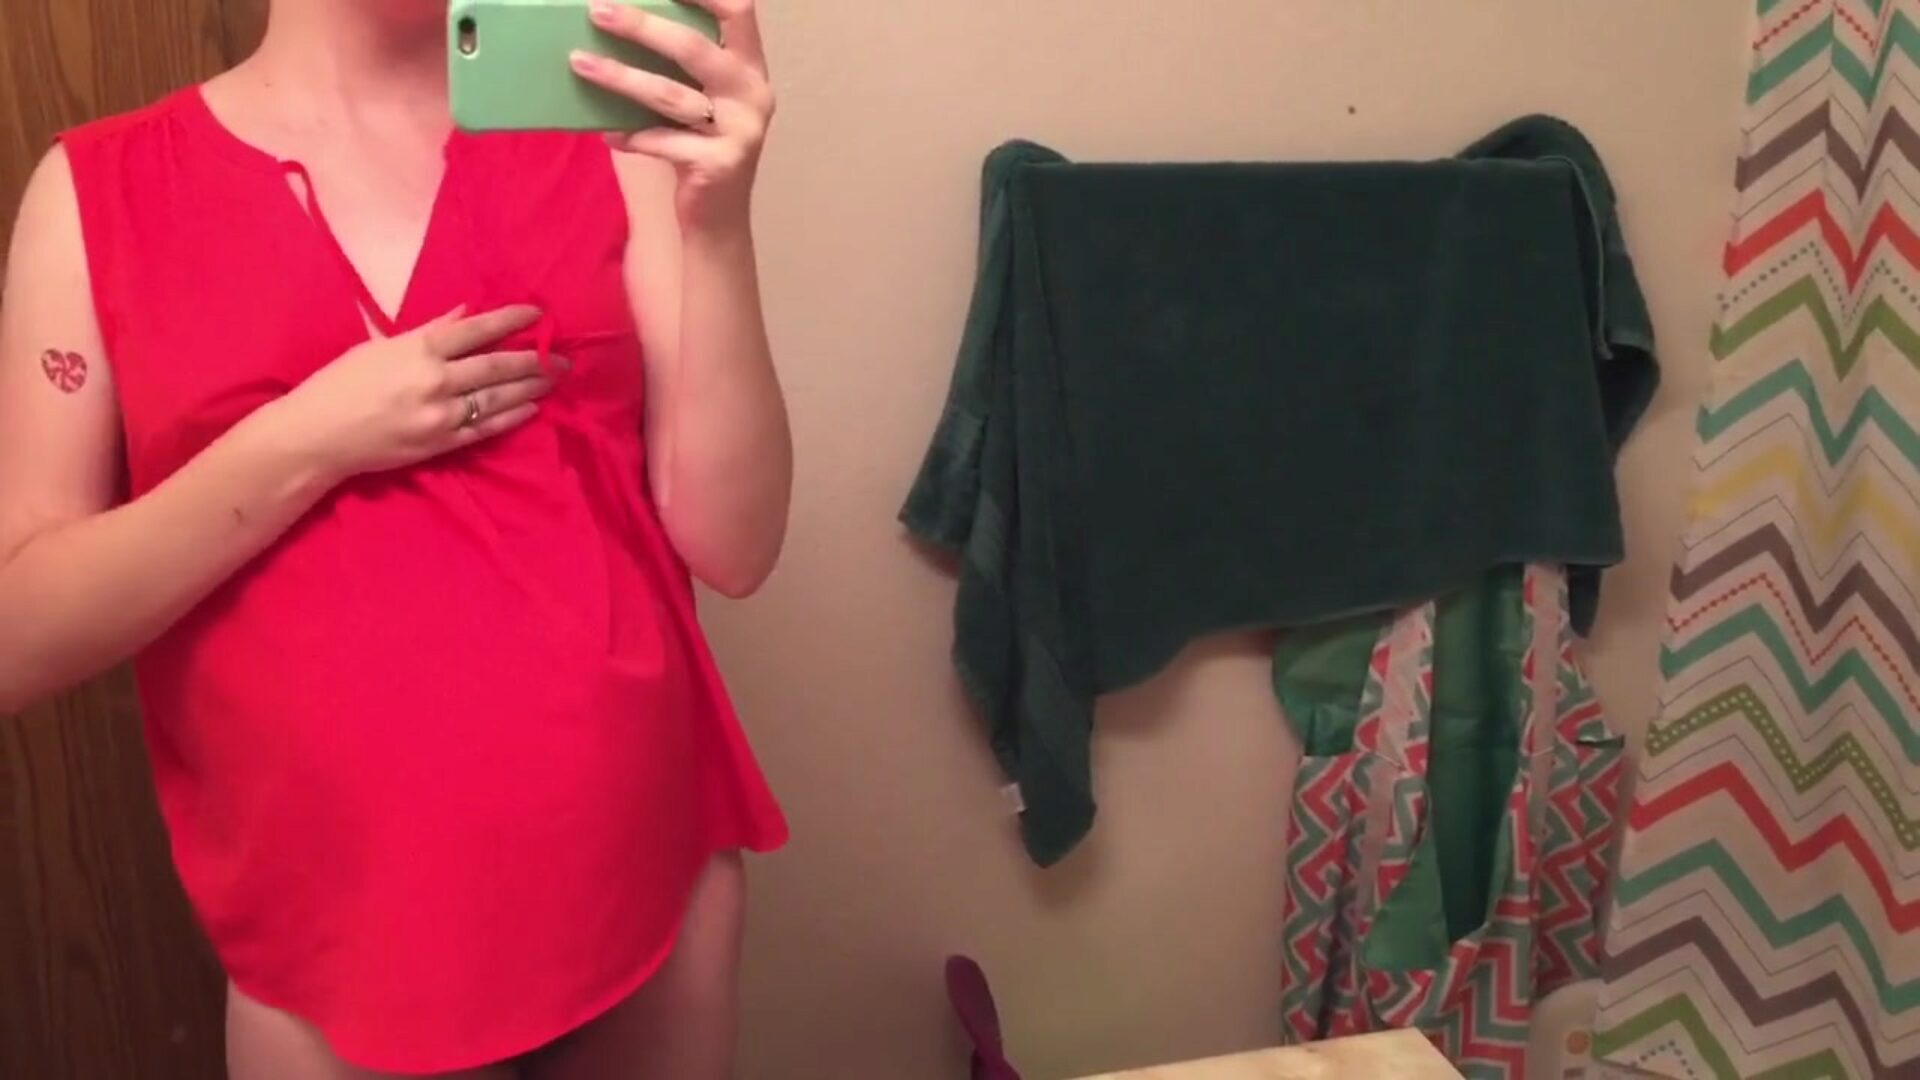 الأم الحامل الشعرية أود أن أمارس الجنس مع الشعور بالمرح في الحمام